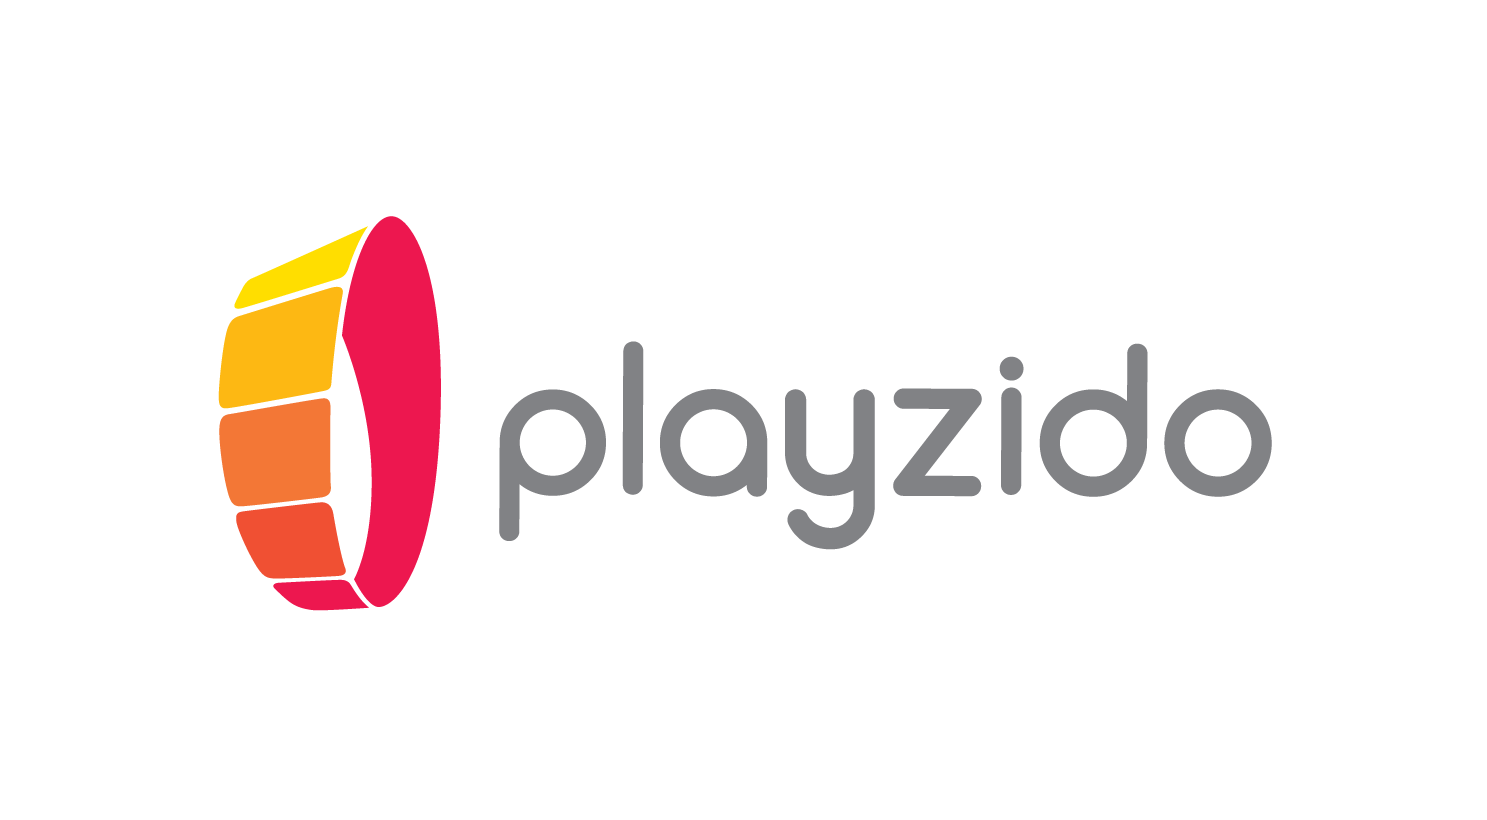 Playzido shortlisted for SBC Awards 2019